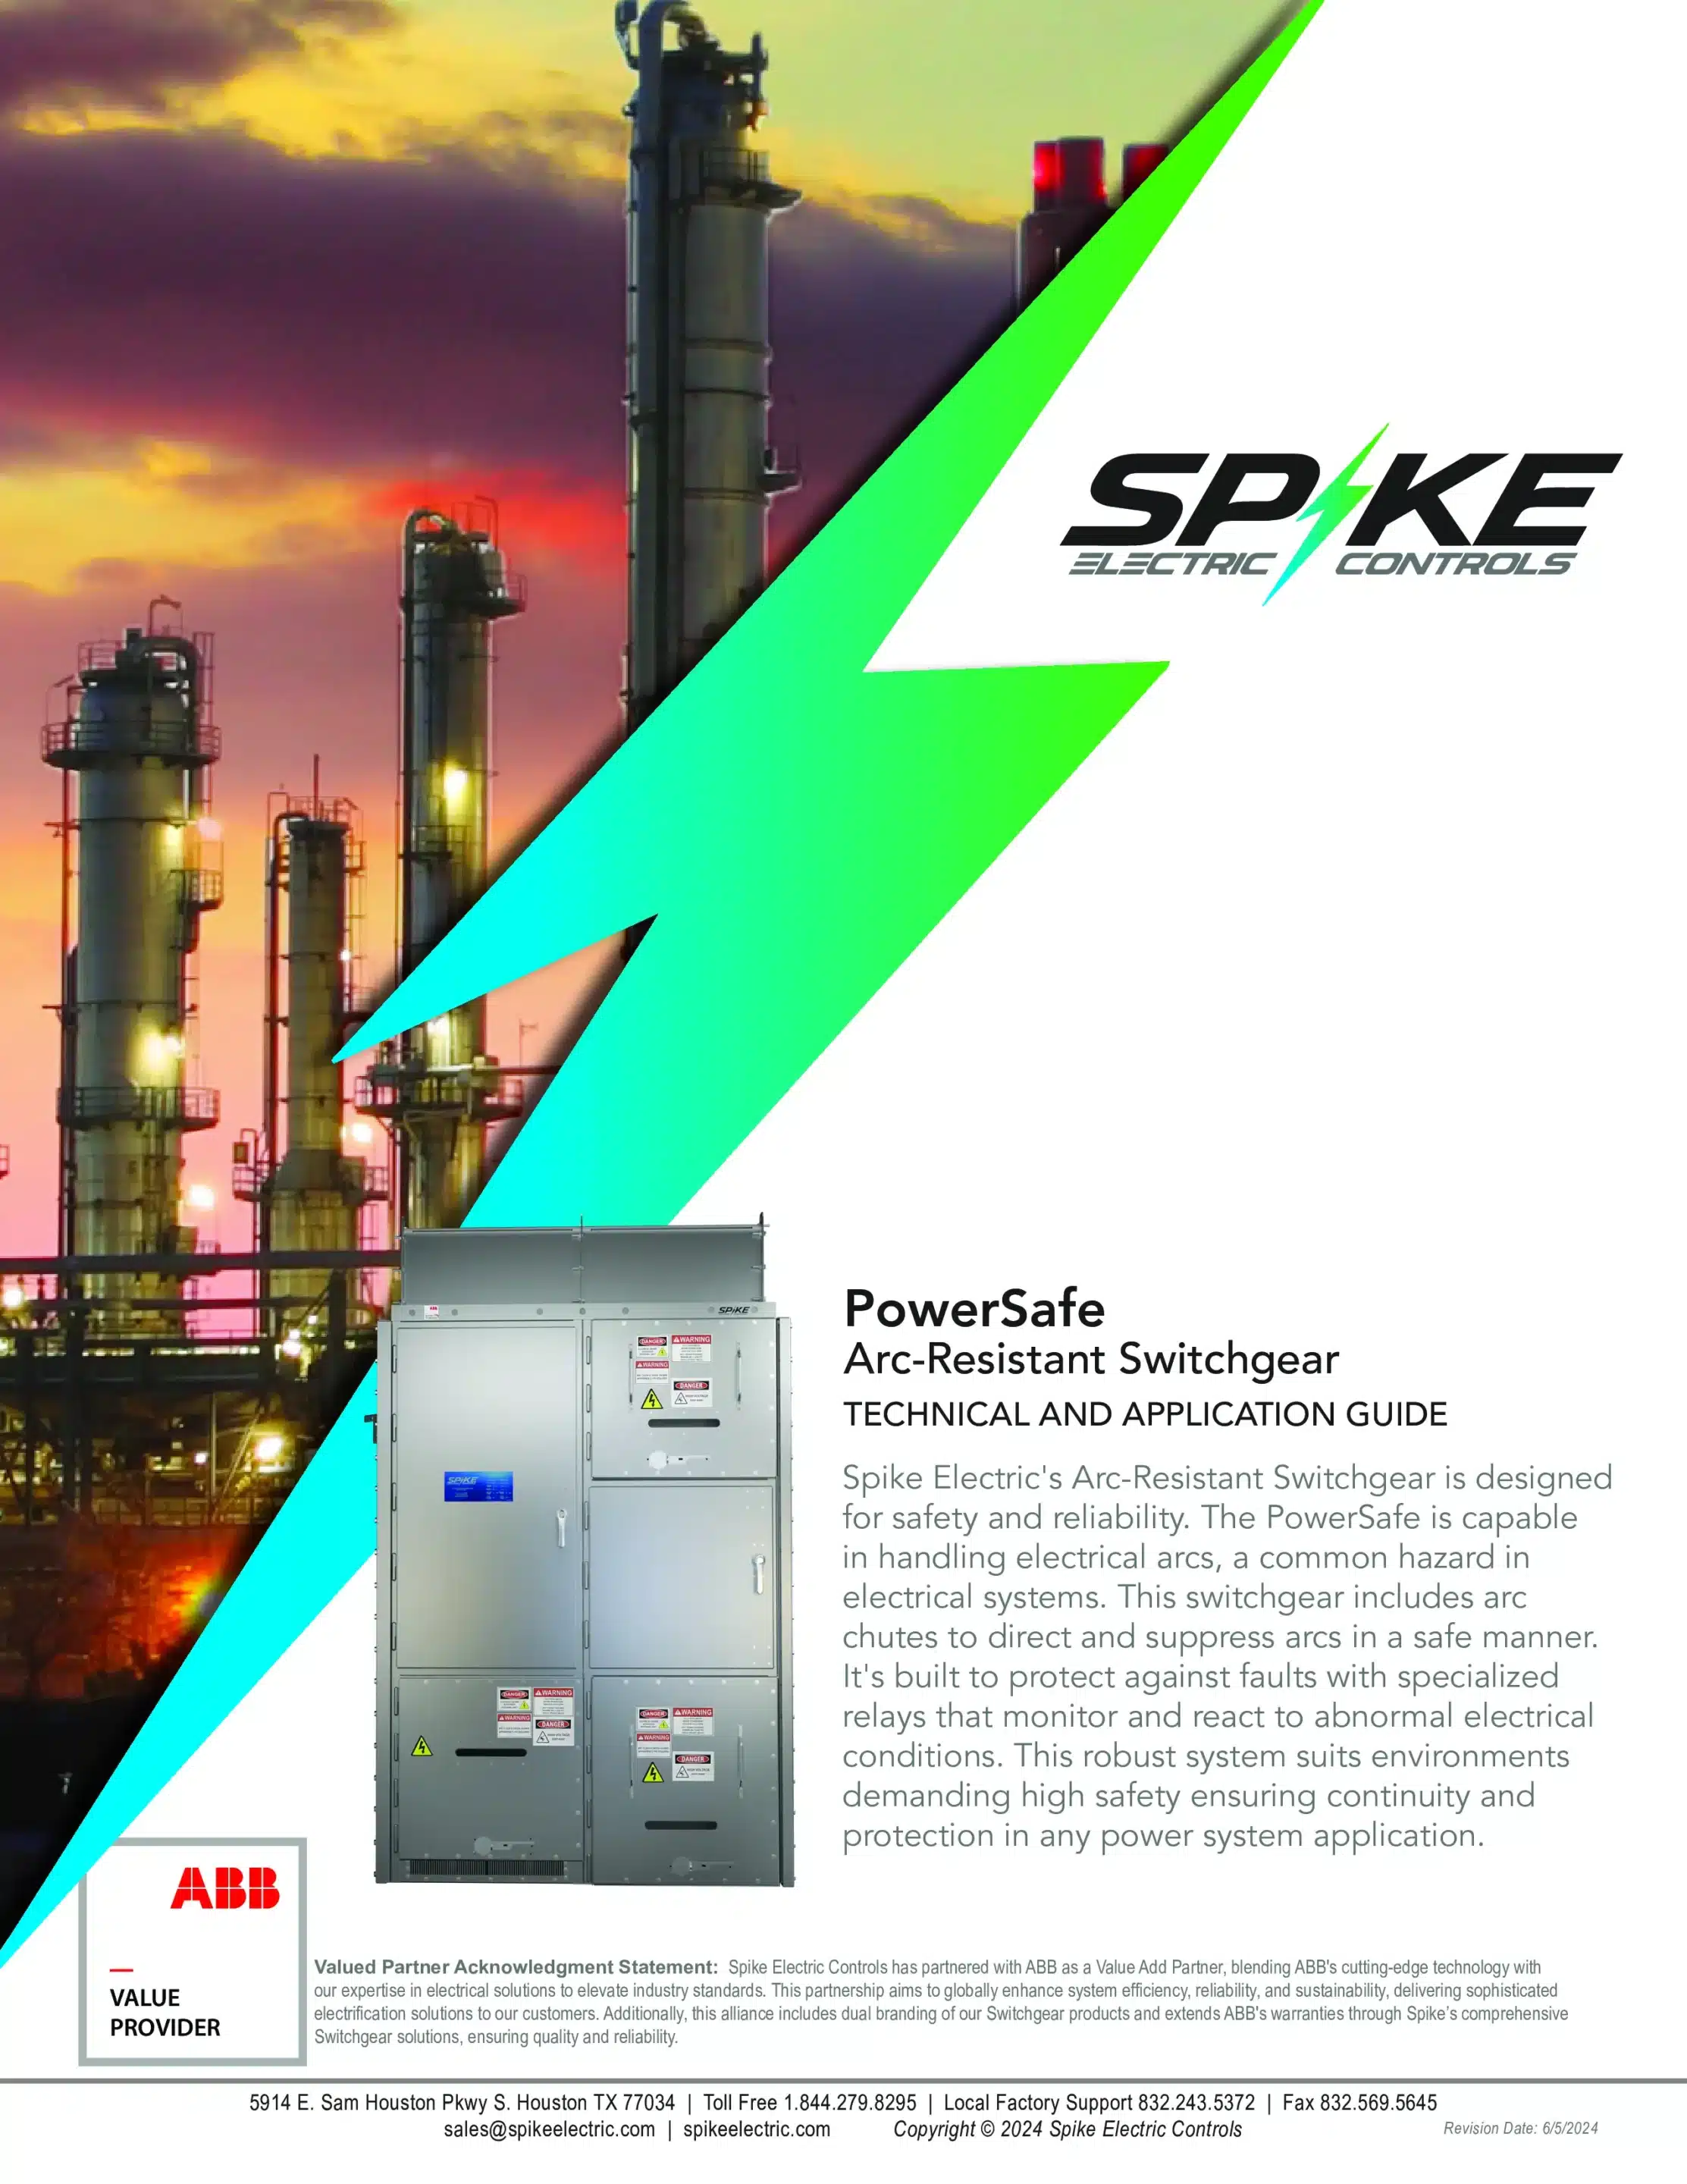 PowerSafe Arc-Resistant switchgear